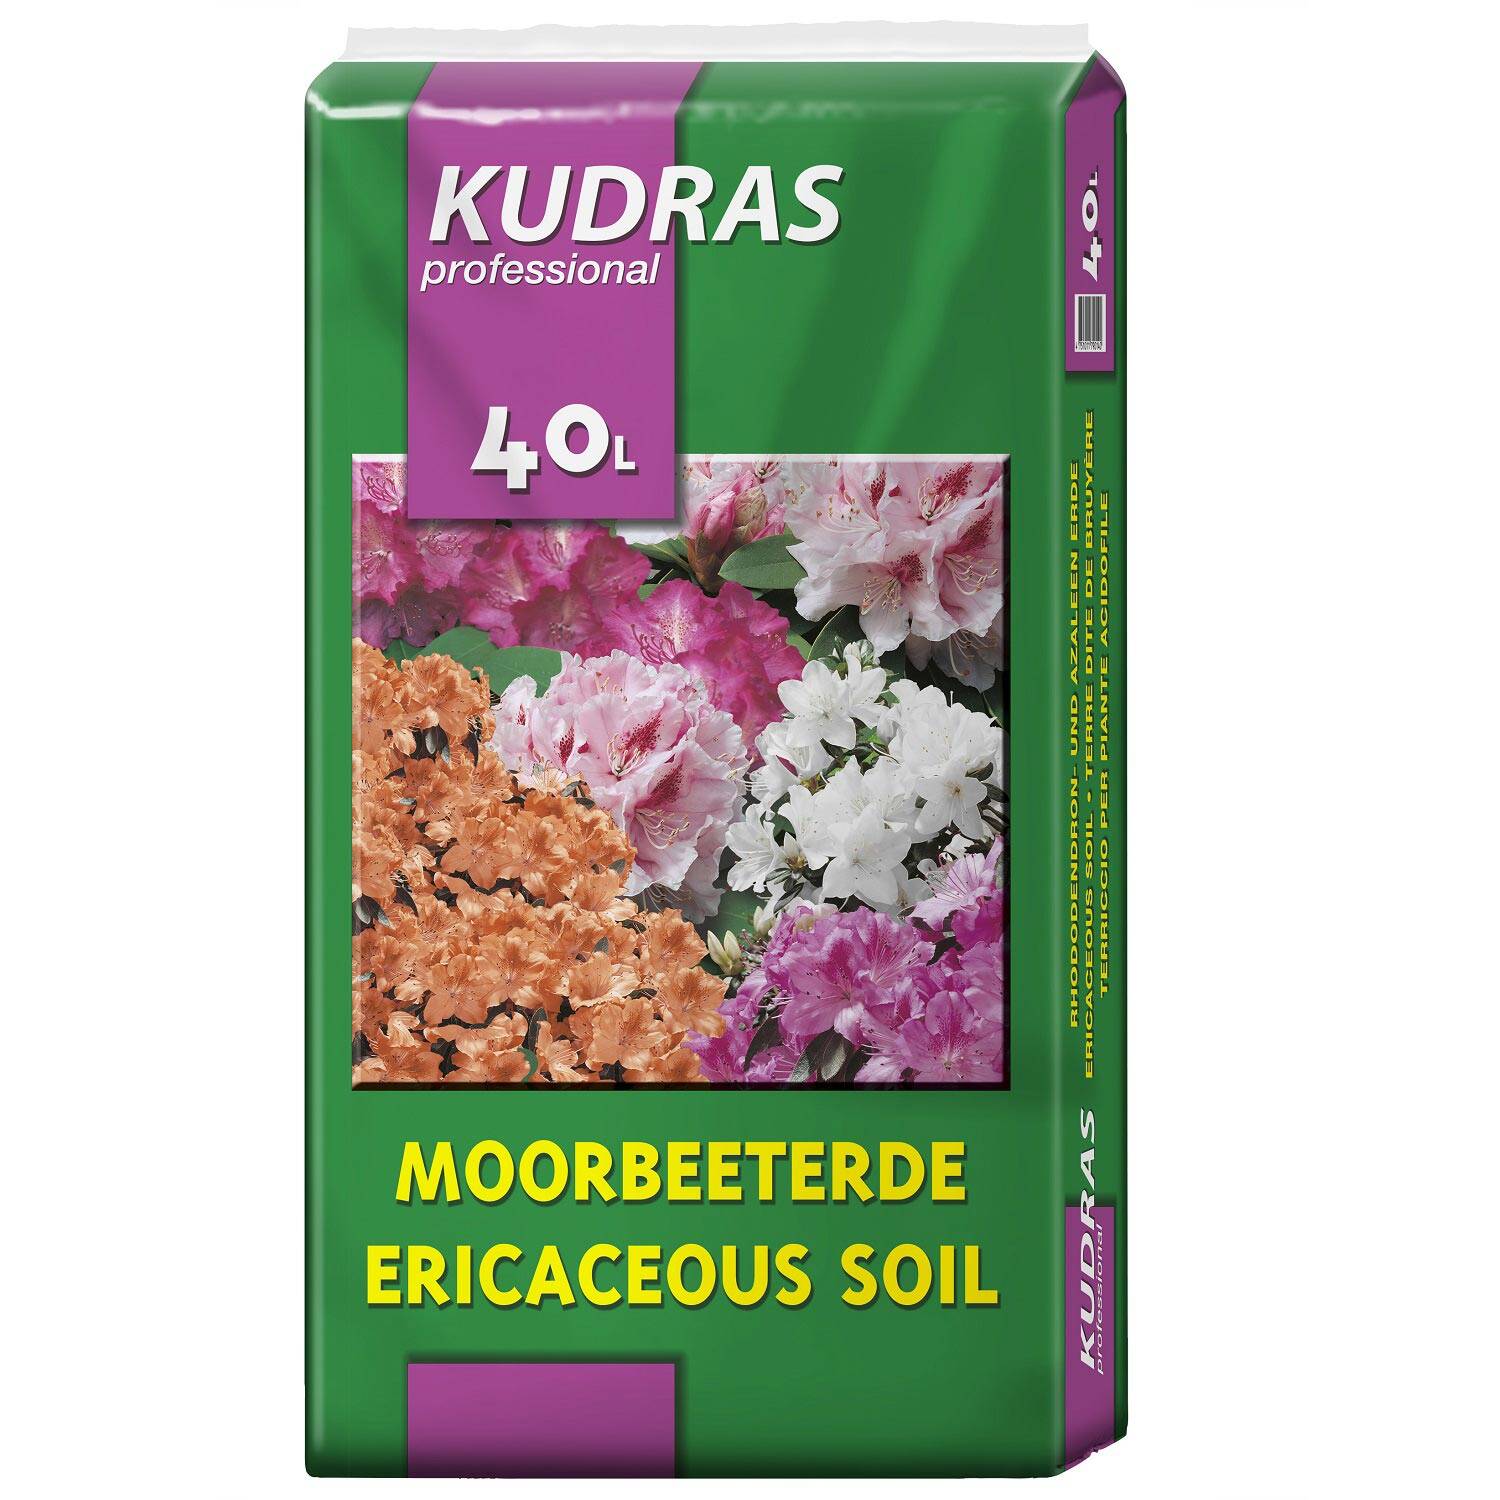 Kategorie <b>Produkt nicht gewünscht </b> -  - Kudras Moorbeeterde/Rhododendronerde